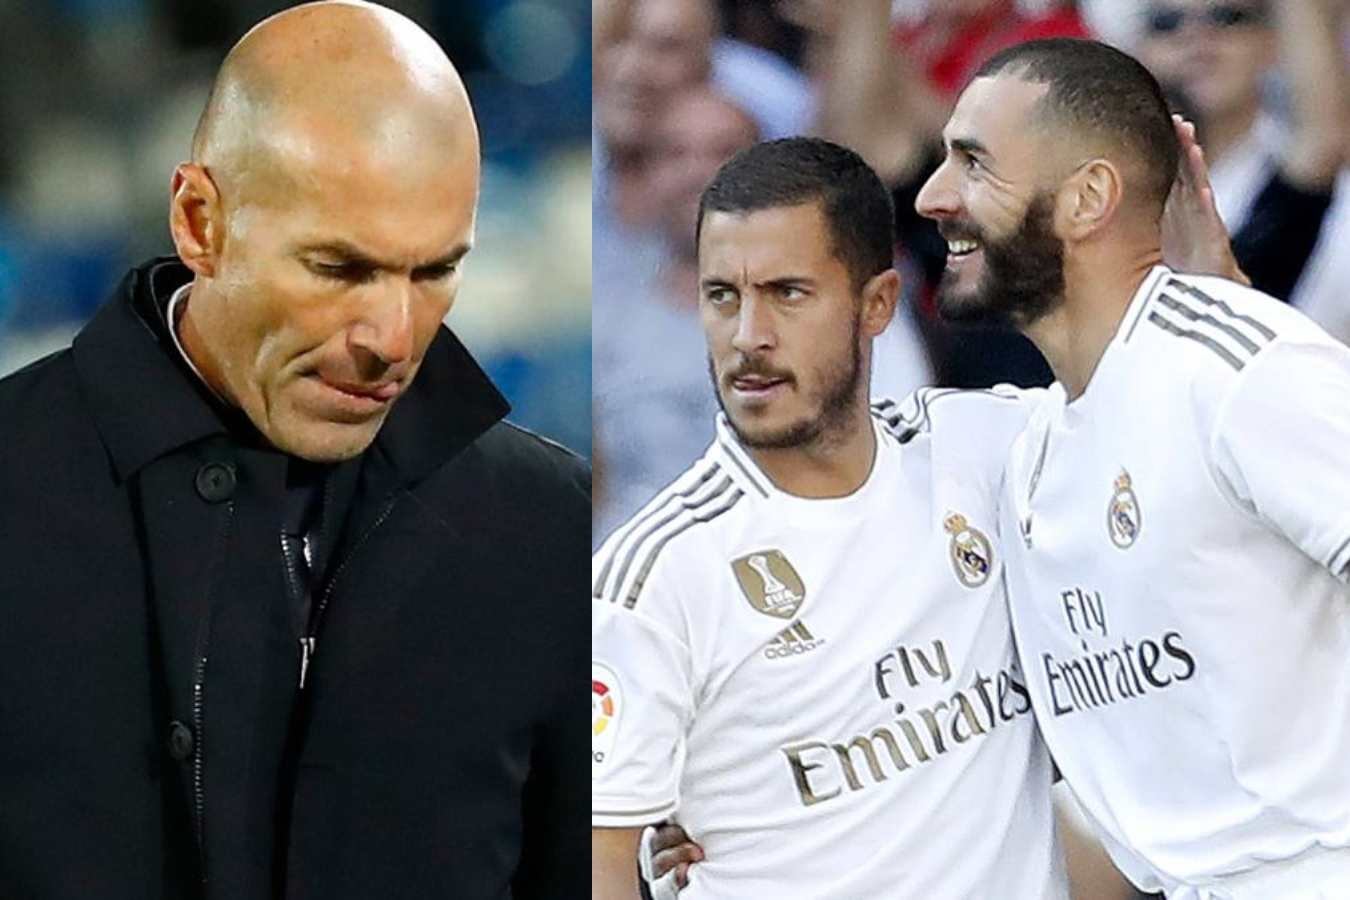 El primer jugador que dejaría el Real Madrid tras anunciarse la salida de Zinedine Zidane